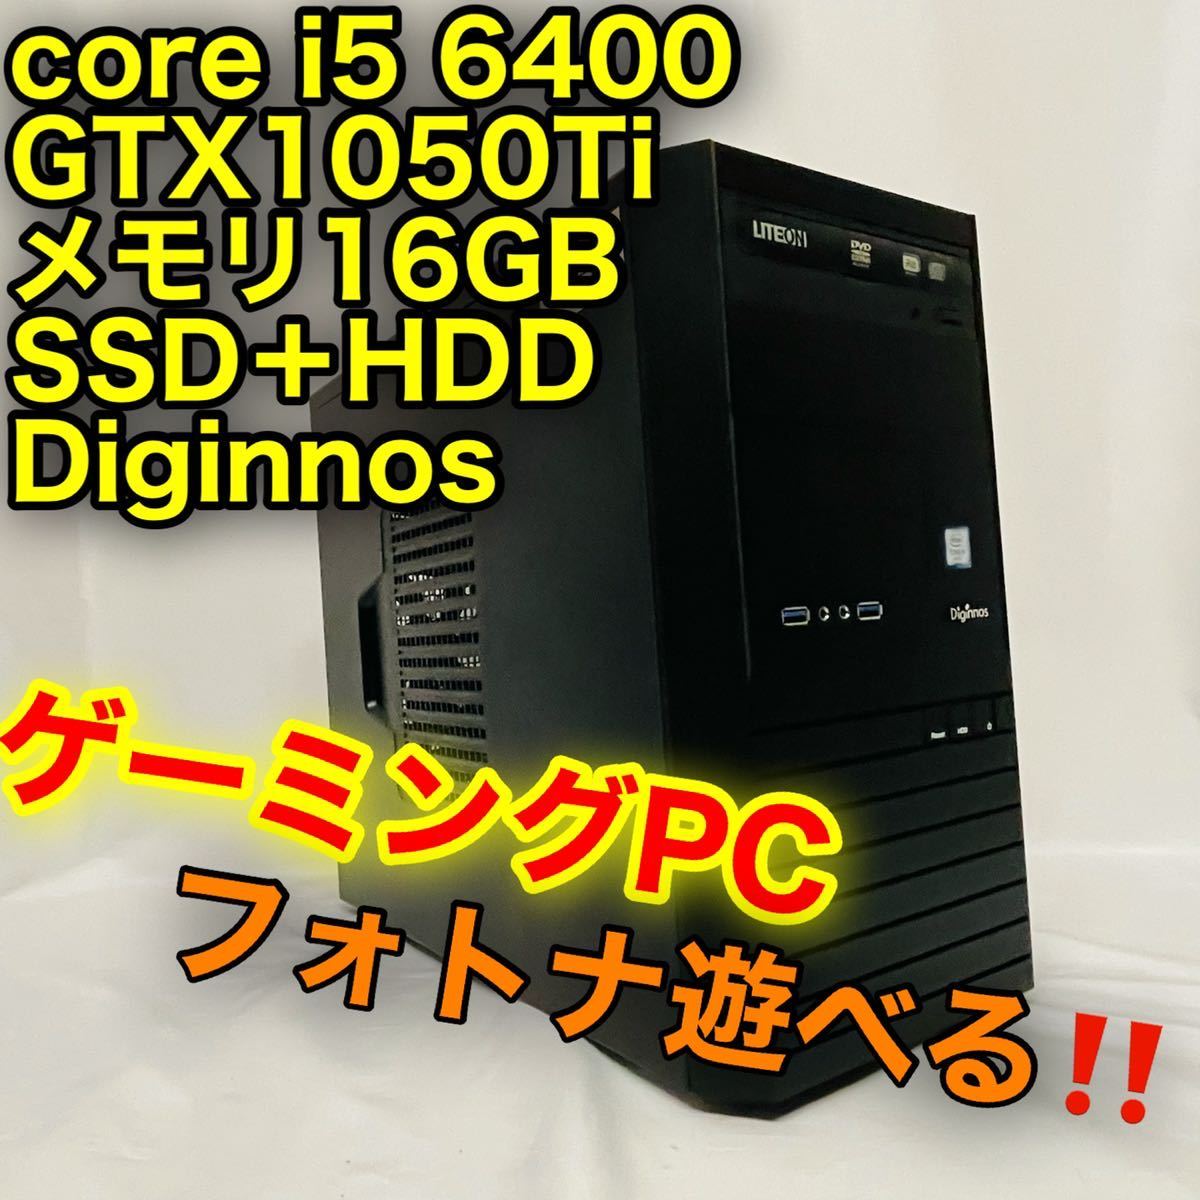 数量は多い 爆速!SSD!ゲームPC/i7-3770/無線/Office/Fortnite - デスクトップ型PC - alrc.asia